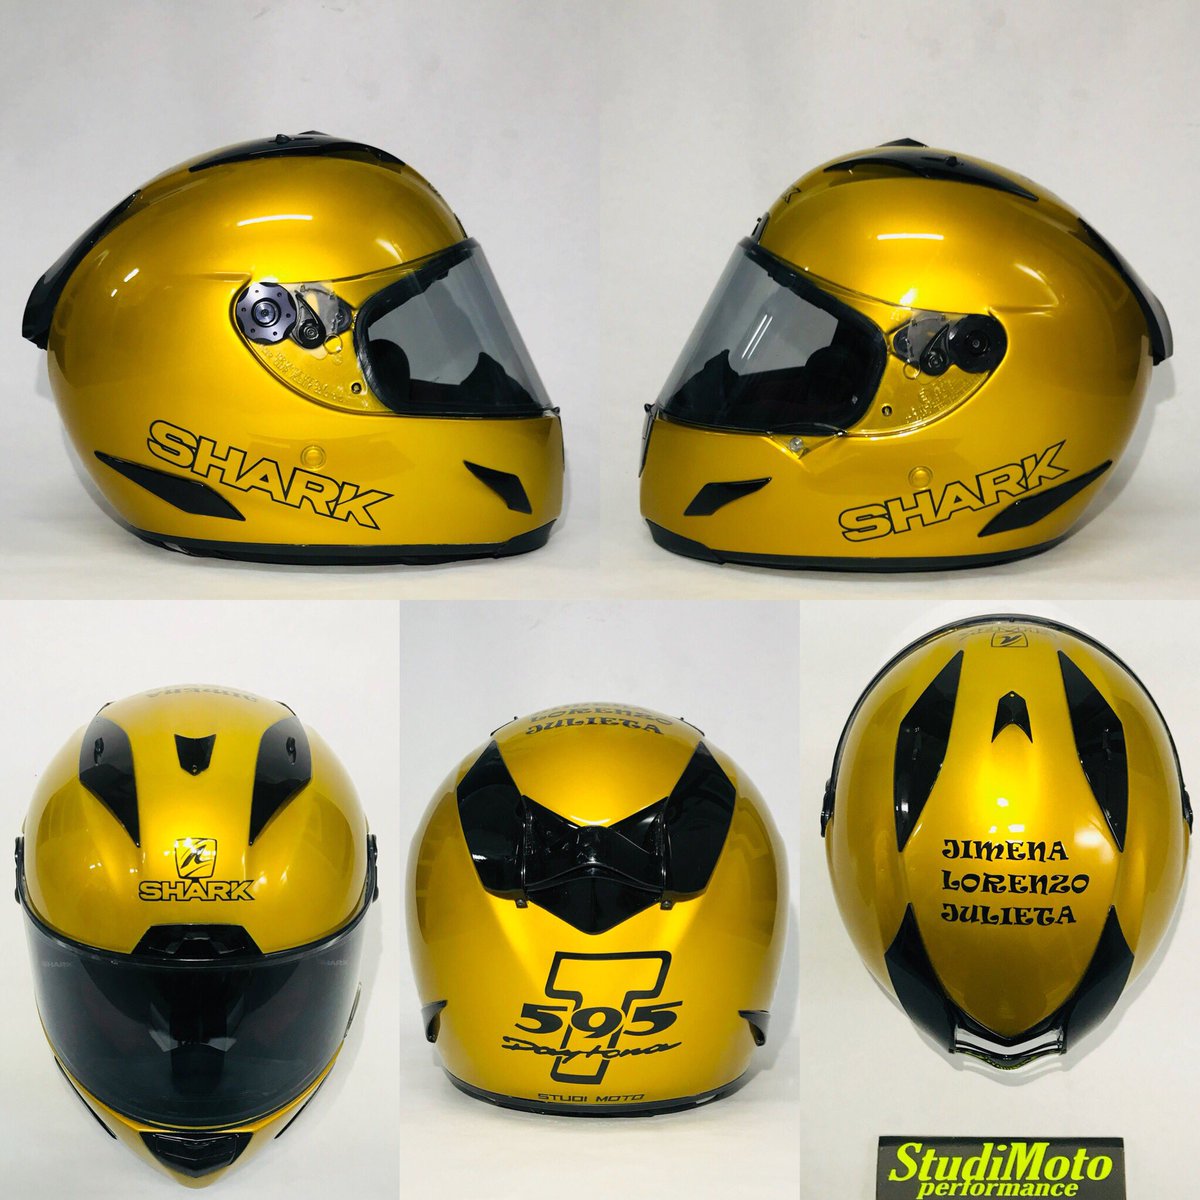 Studi Moto Pintura on Twitter: "Reparación y de casco Shark Race-R Pro Chaz. El Sr. Cliente ya tiene el casco que deseaba a color igual que su moto Triumph Daytona T595.